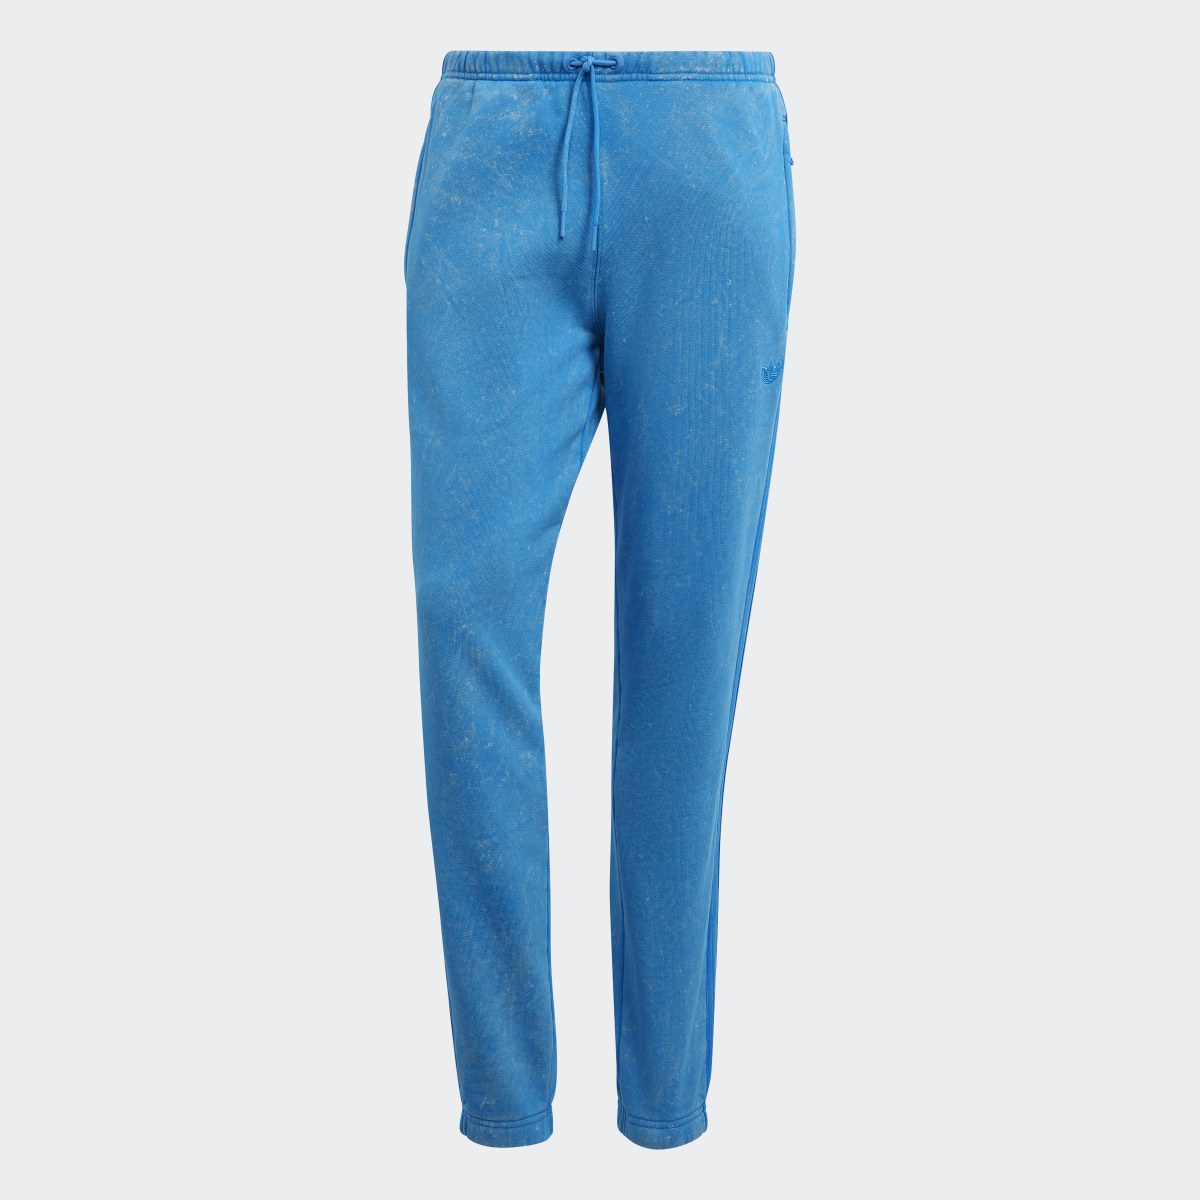 Adidas Pantalon délavé Blue Version. 4